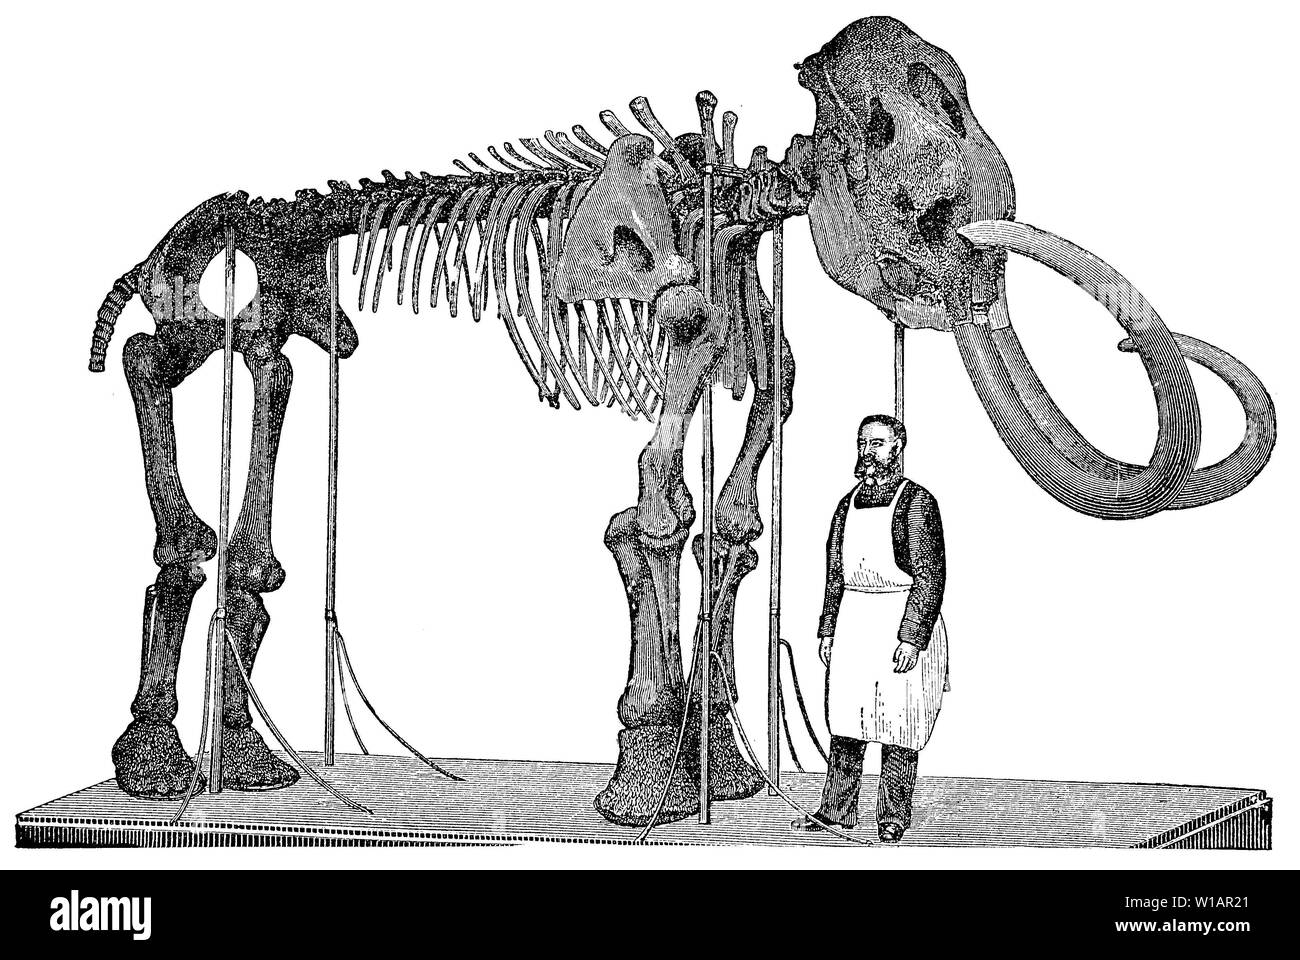 Squelette d'un mammouth, 1881, gravure sur bois historique illustration, Allemagne Banque D'Images